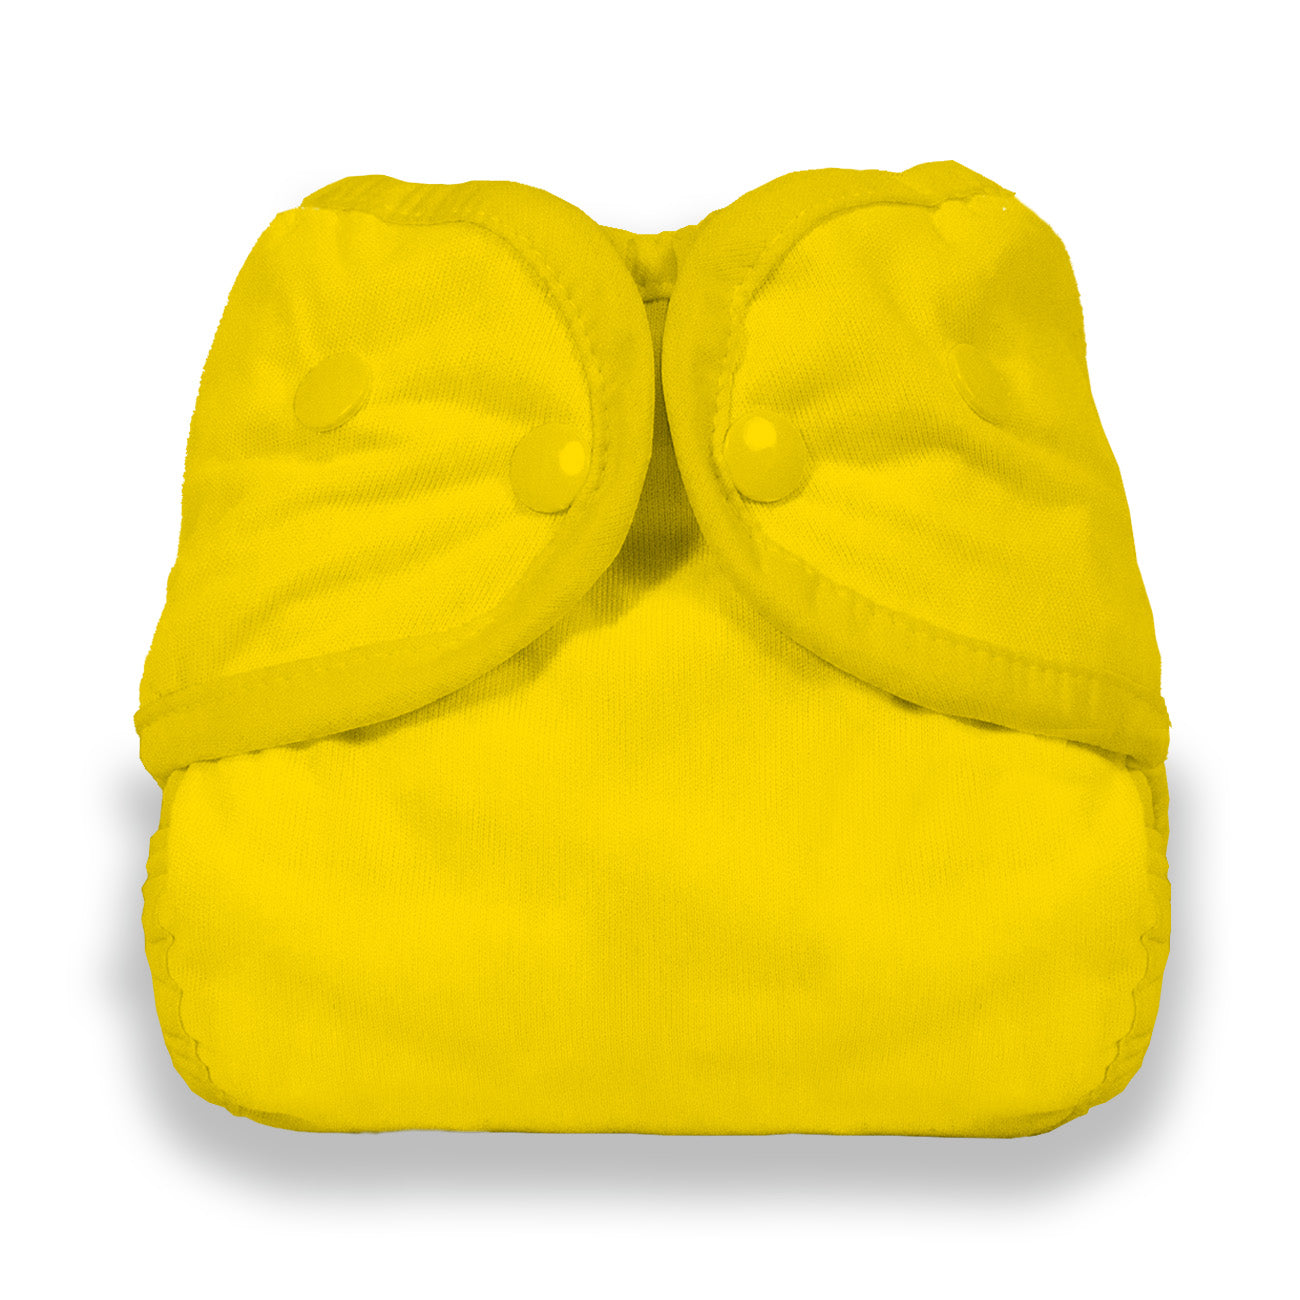 Thirsties Sunshine yellow diaper cover snaps